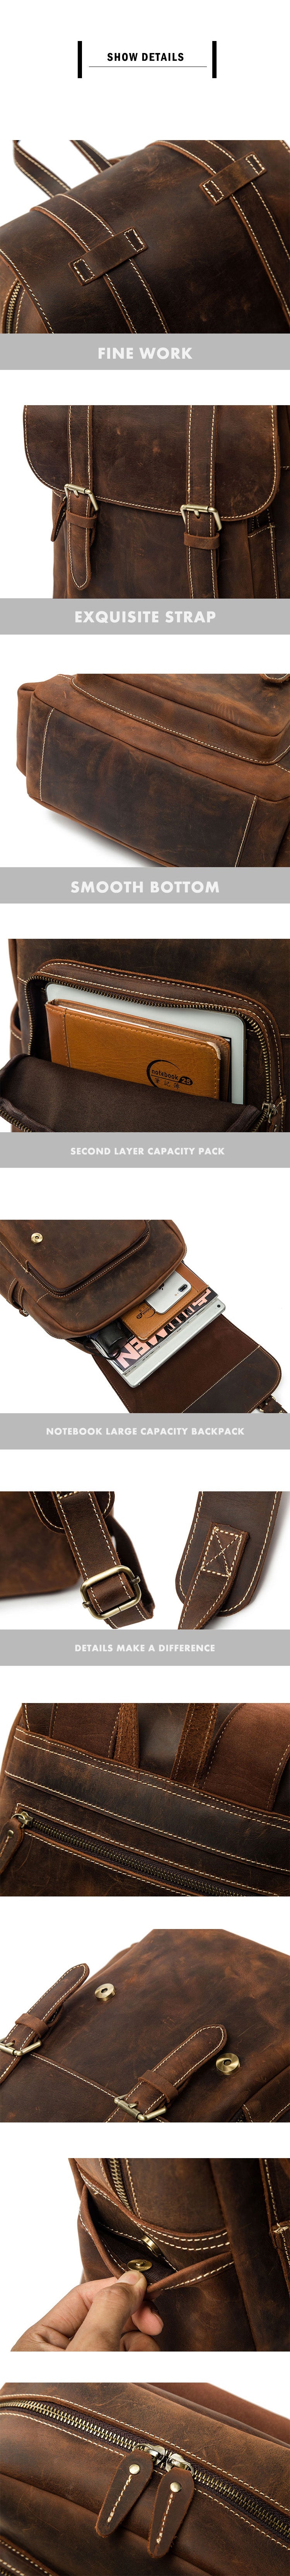 Details Display of Woosir Leather Backpack